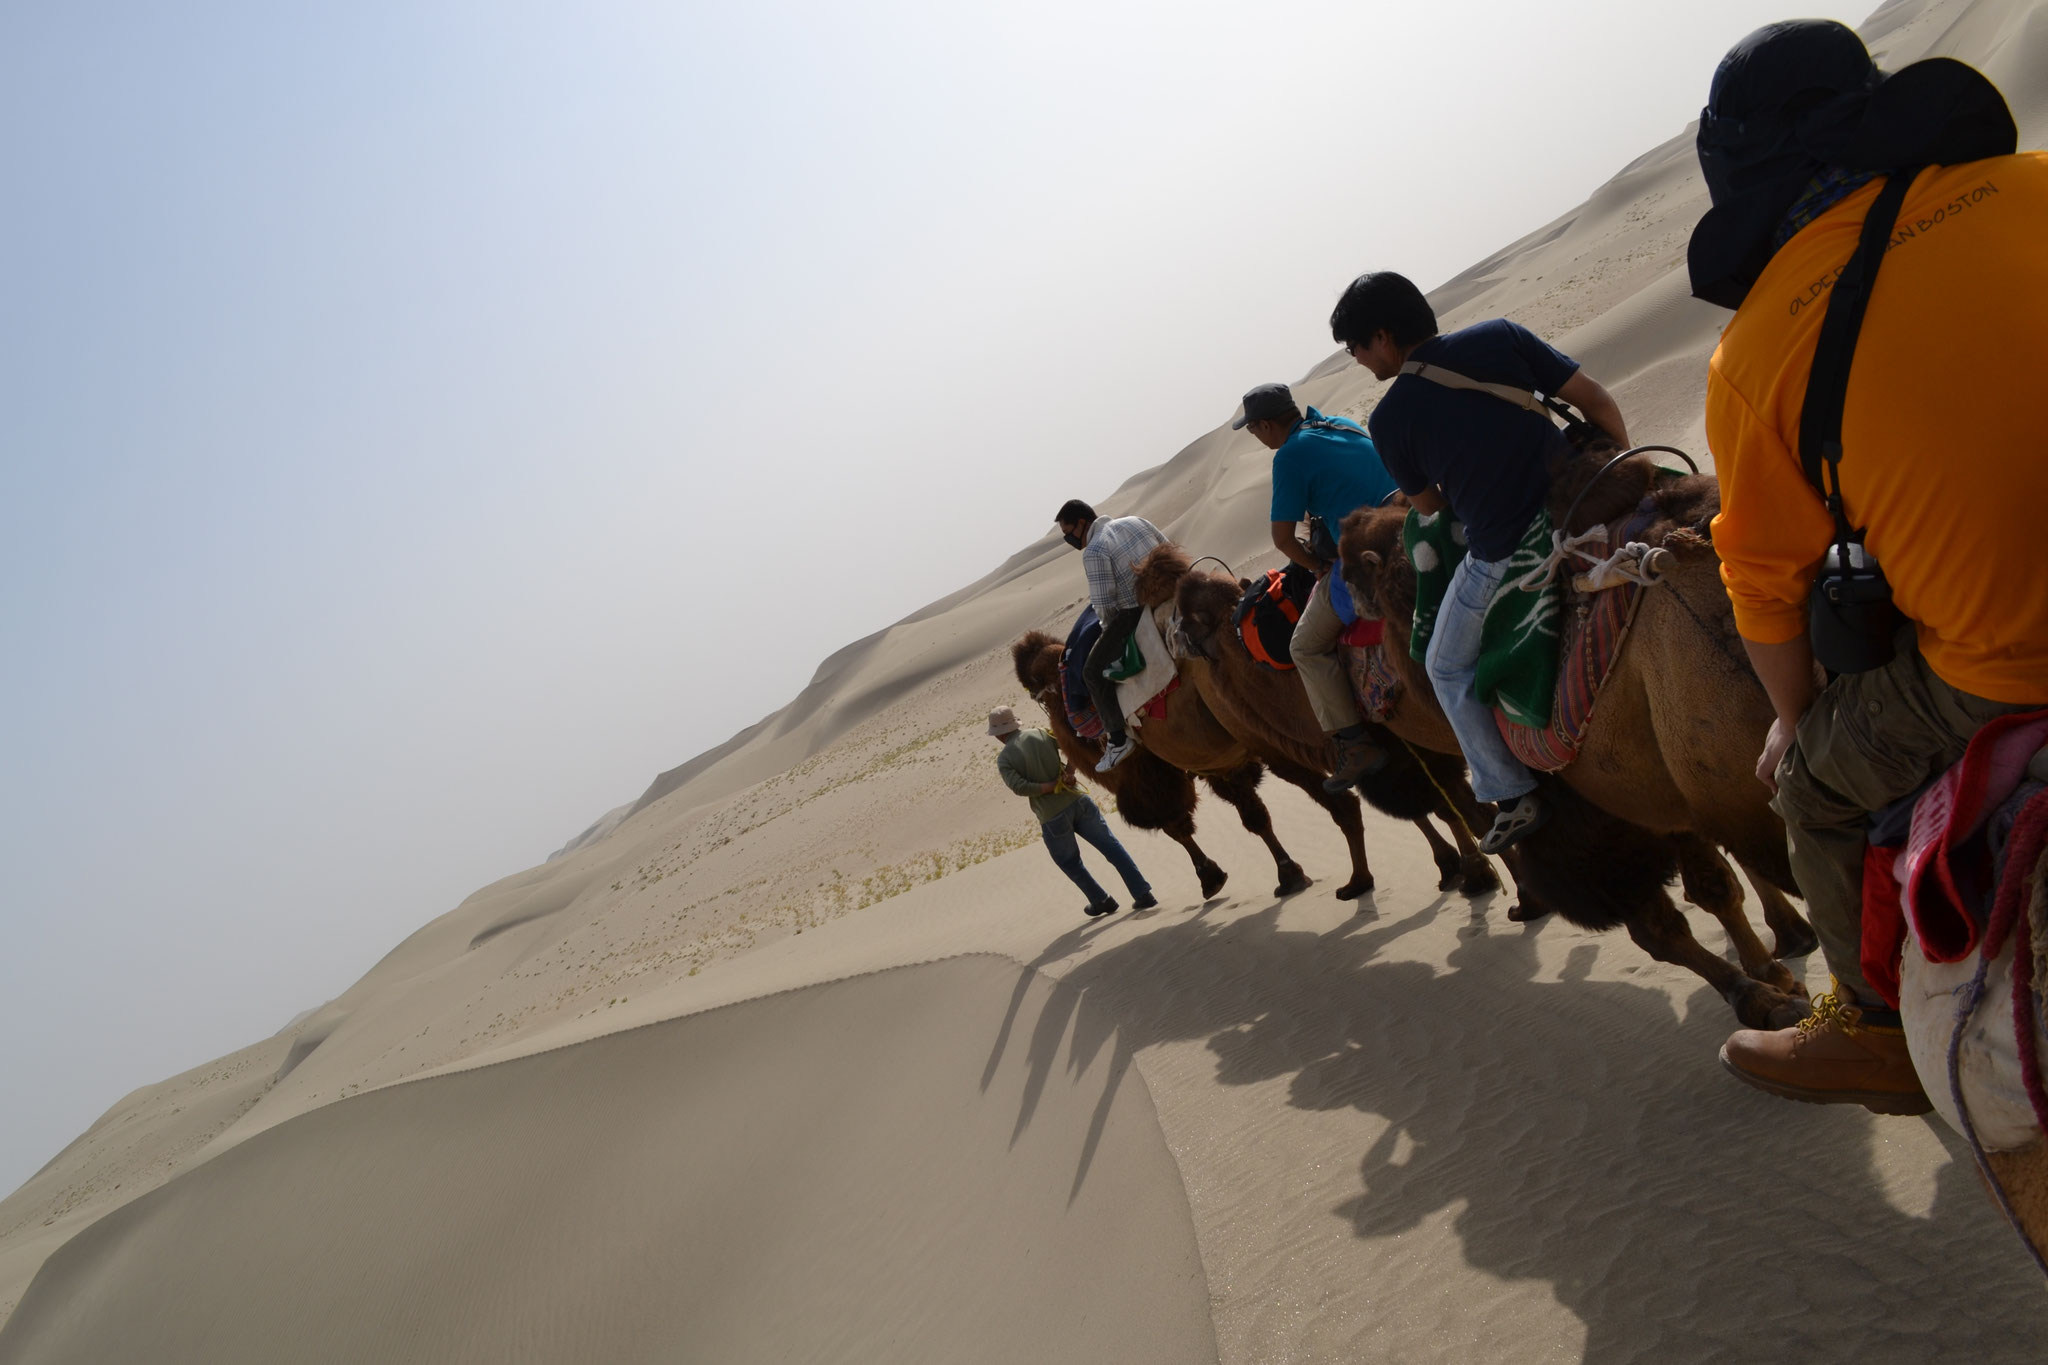 タクラマカン砂漠をラクダで旅する4日間 旅の漫遊